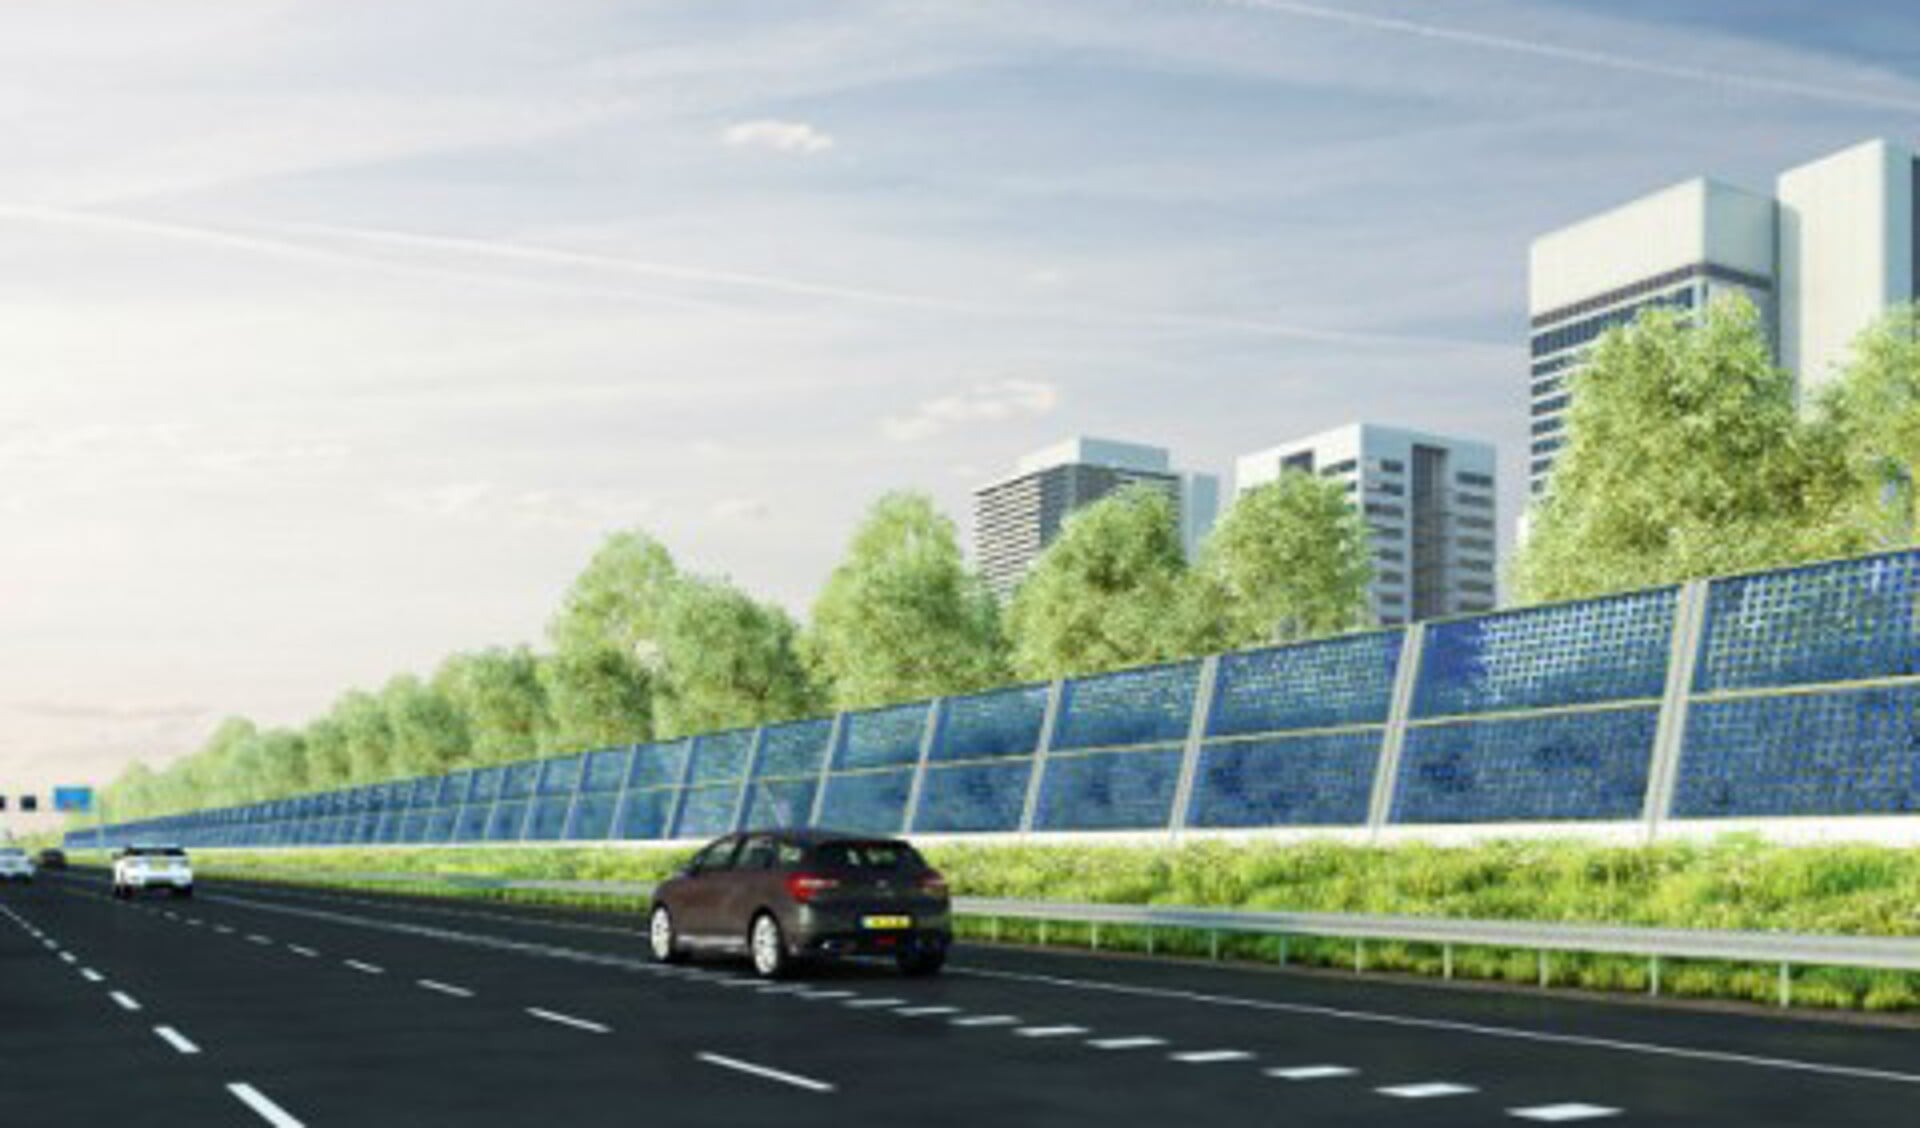 De nieuwe schermen gaan meer verkeerslawaai tegenhouden én tegelijkertijd zonne-energie opwekken